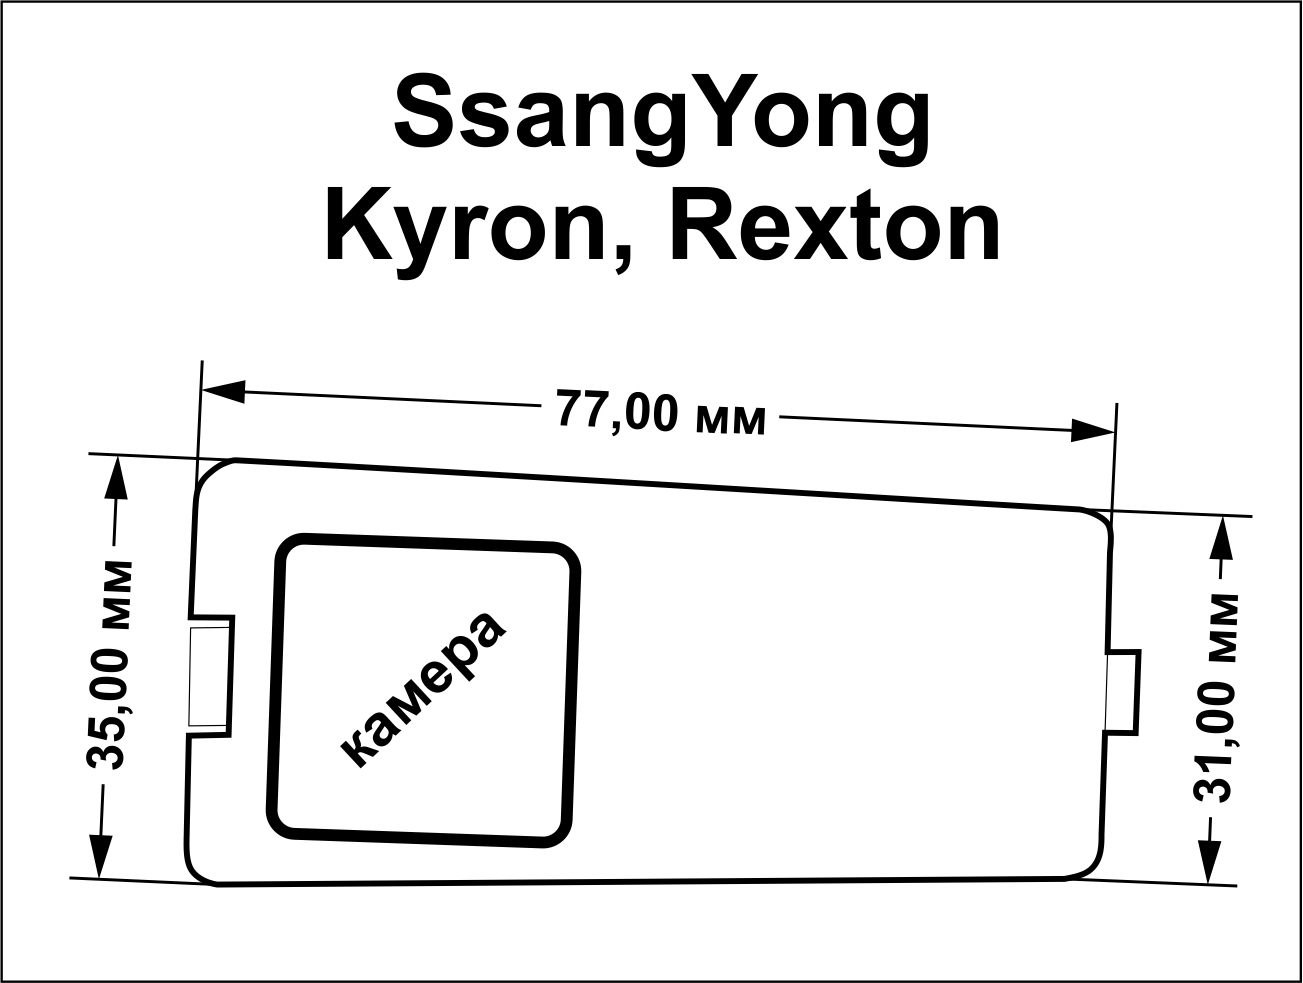 ssangyong kyron, rexton